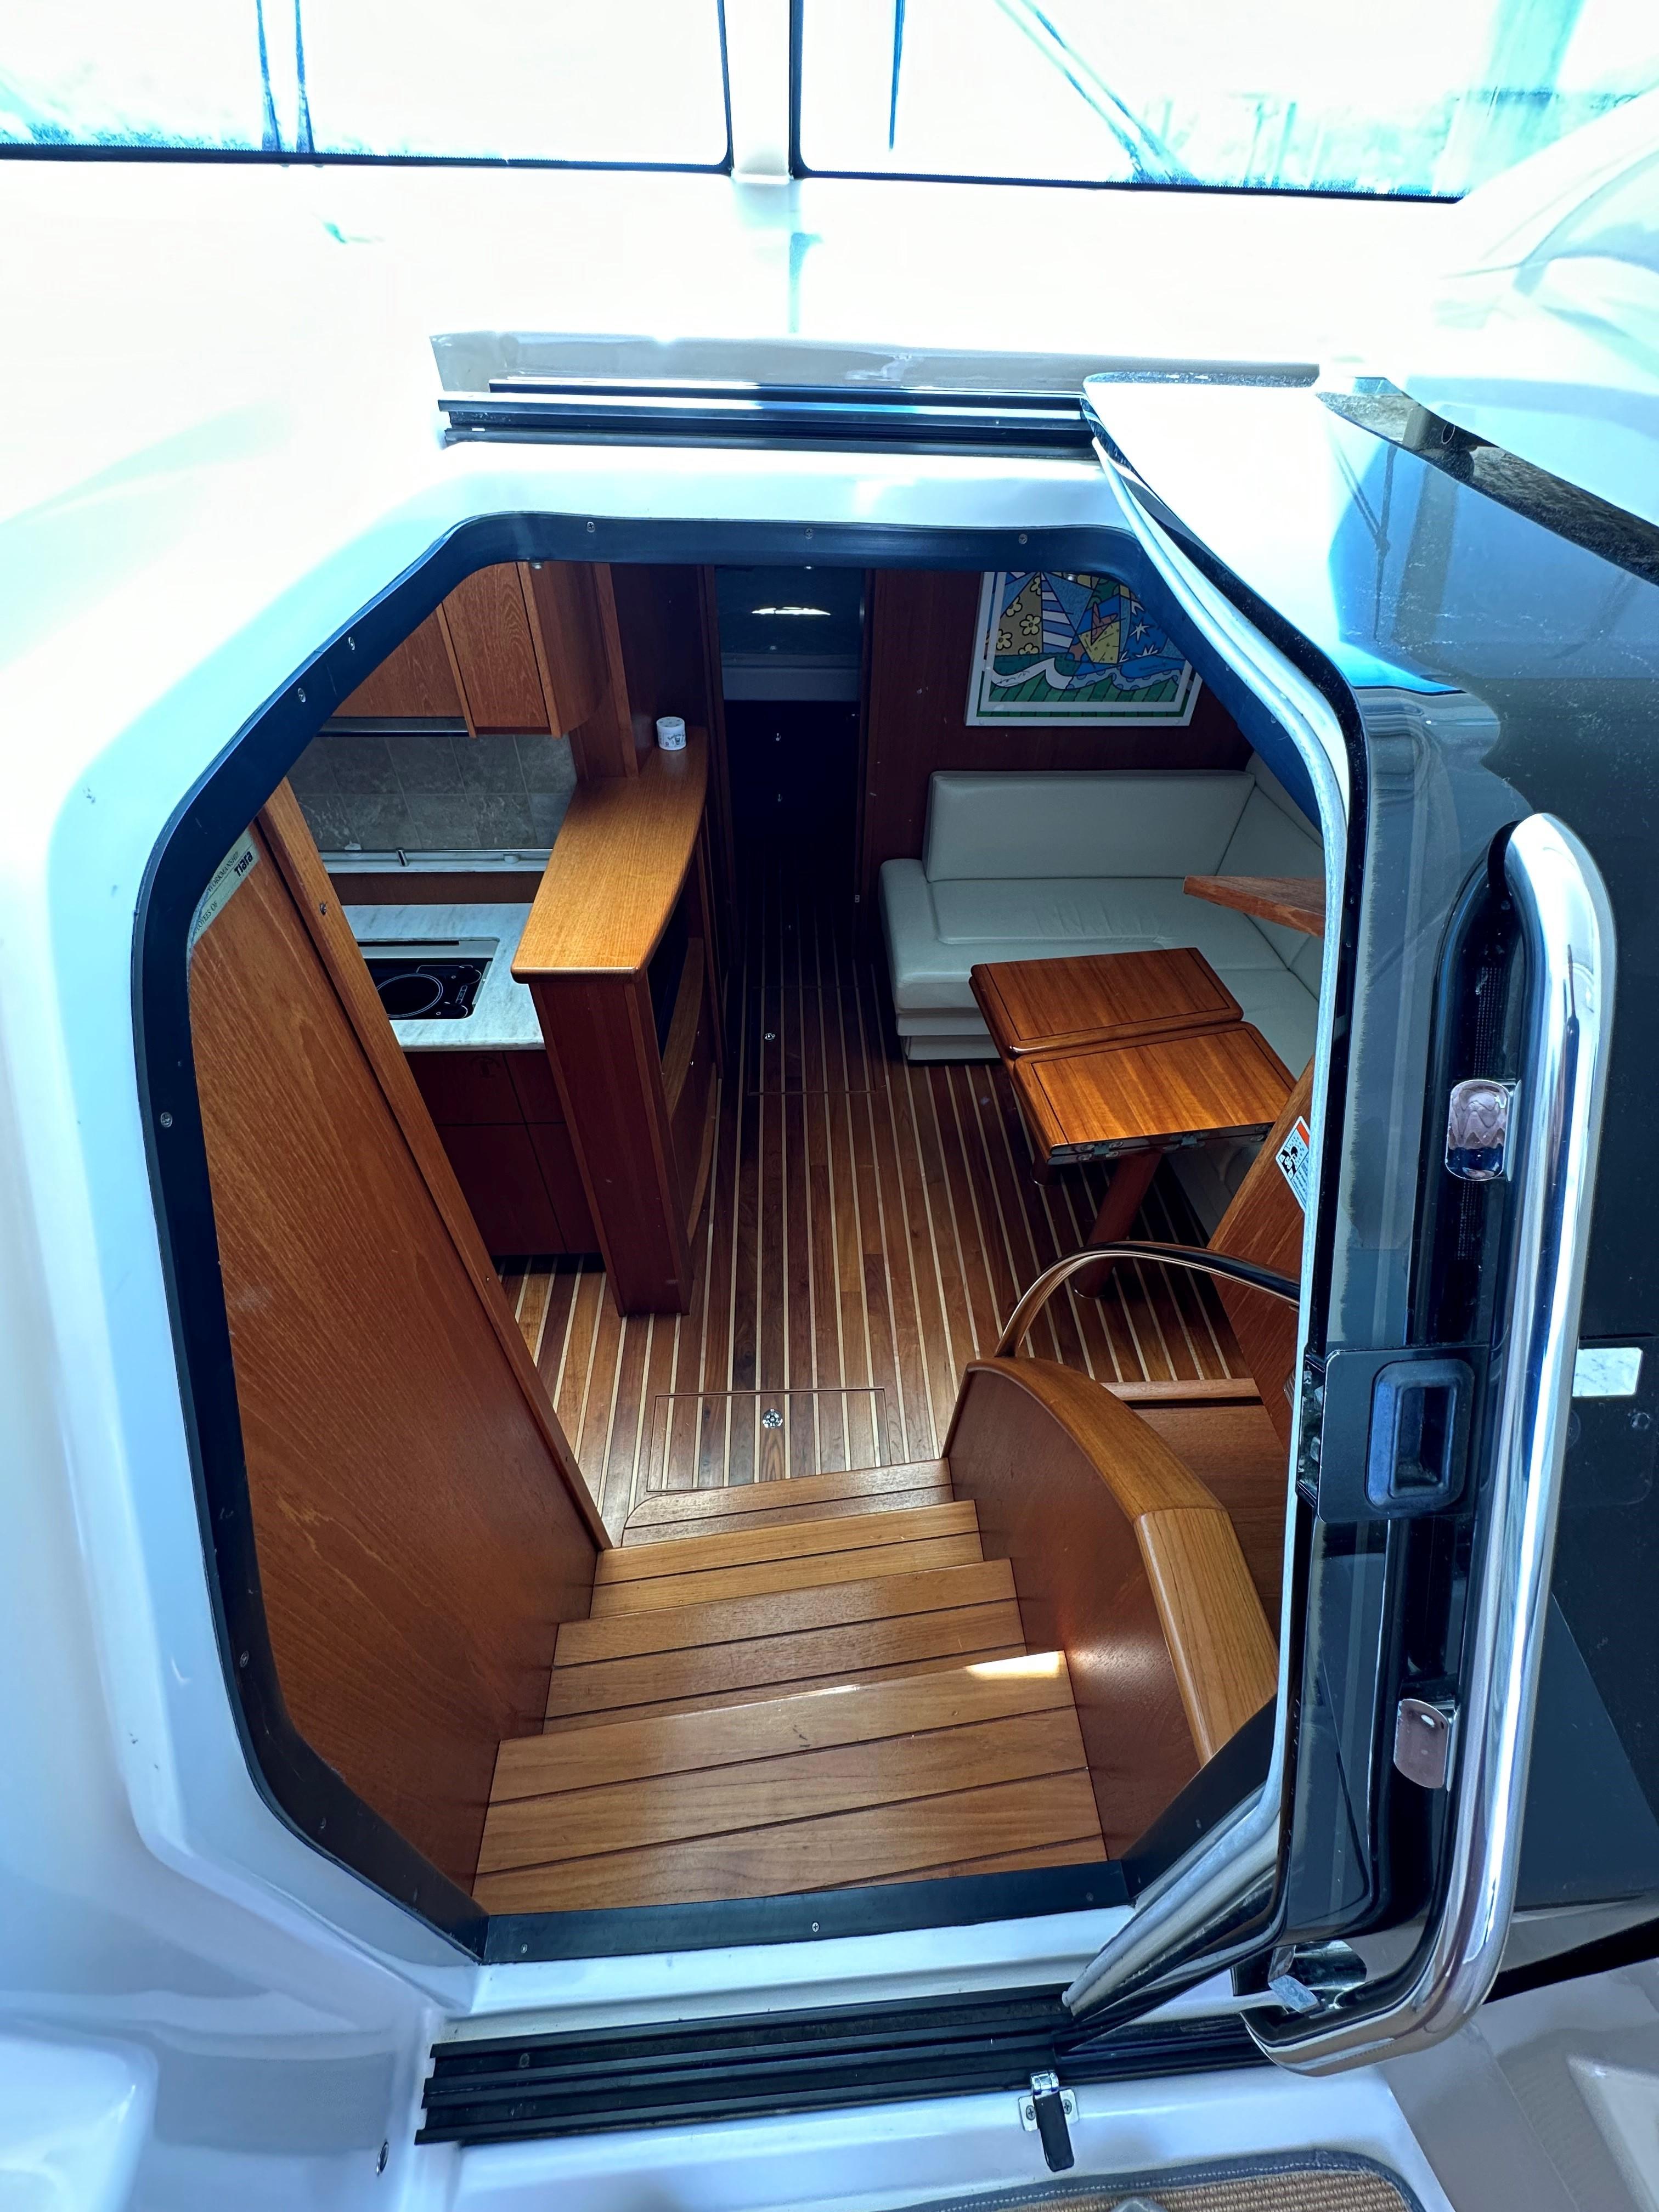 2013 Tiara Yachts 4500 Sovran